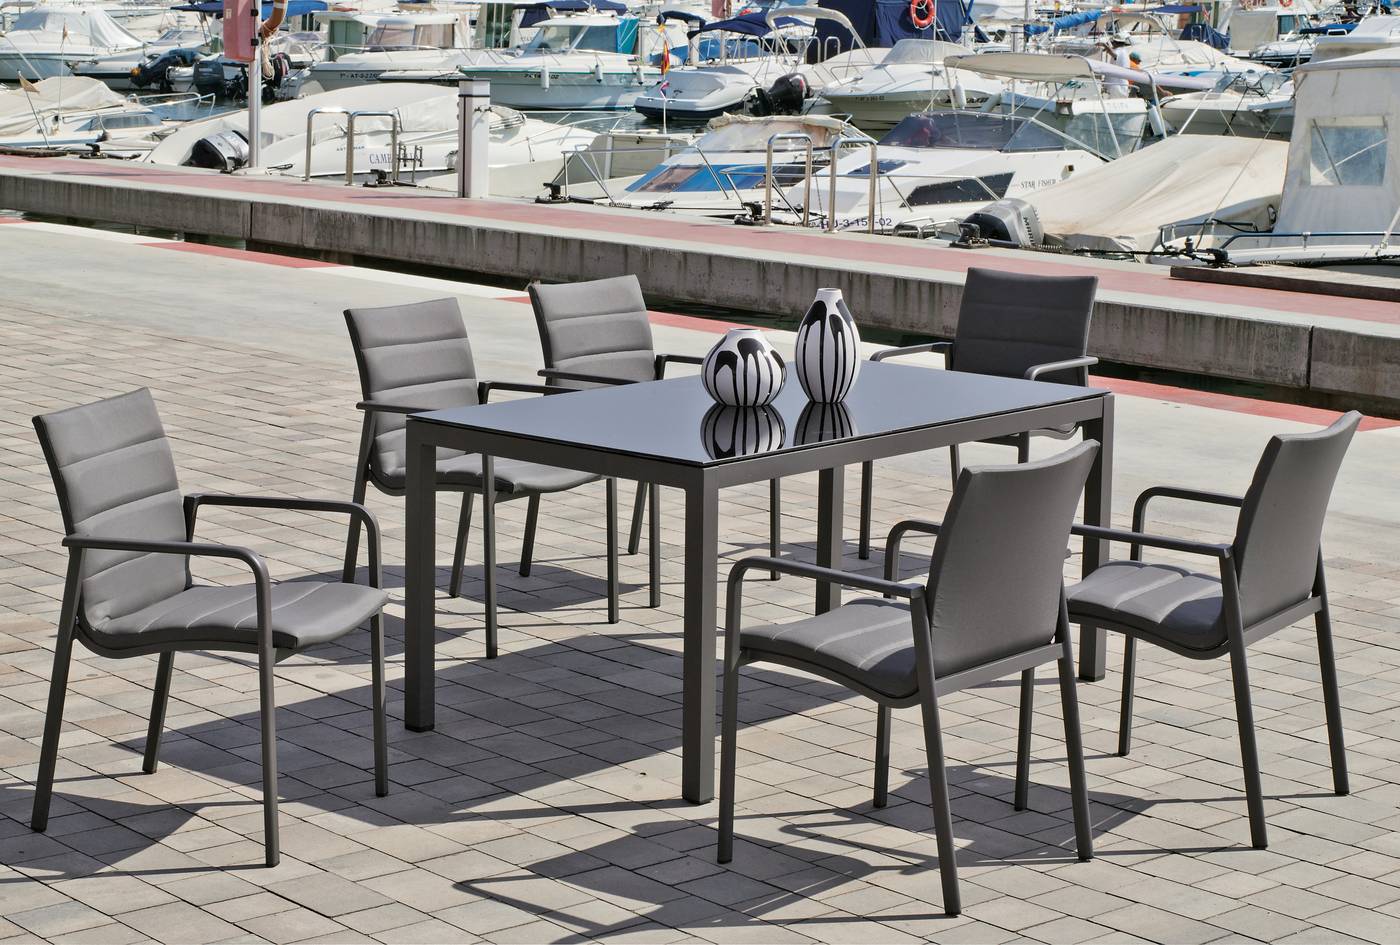 Sillón Aluminio Luxe Corsica-3 - Sillón lujo apilable para jardín o terraza. Estructura de aluminio color antracita. Asiento y resplado acolchado de Textilen.